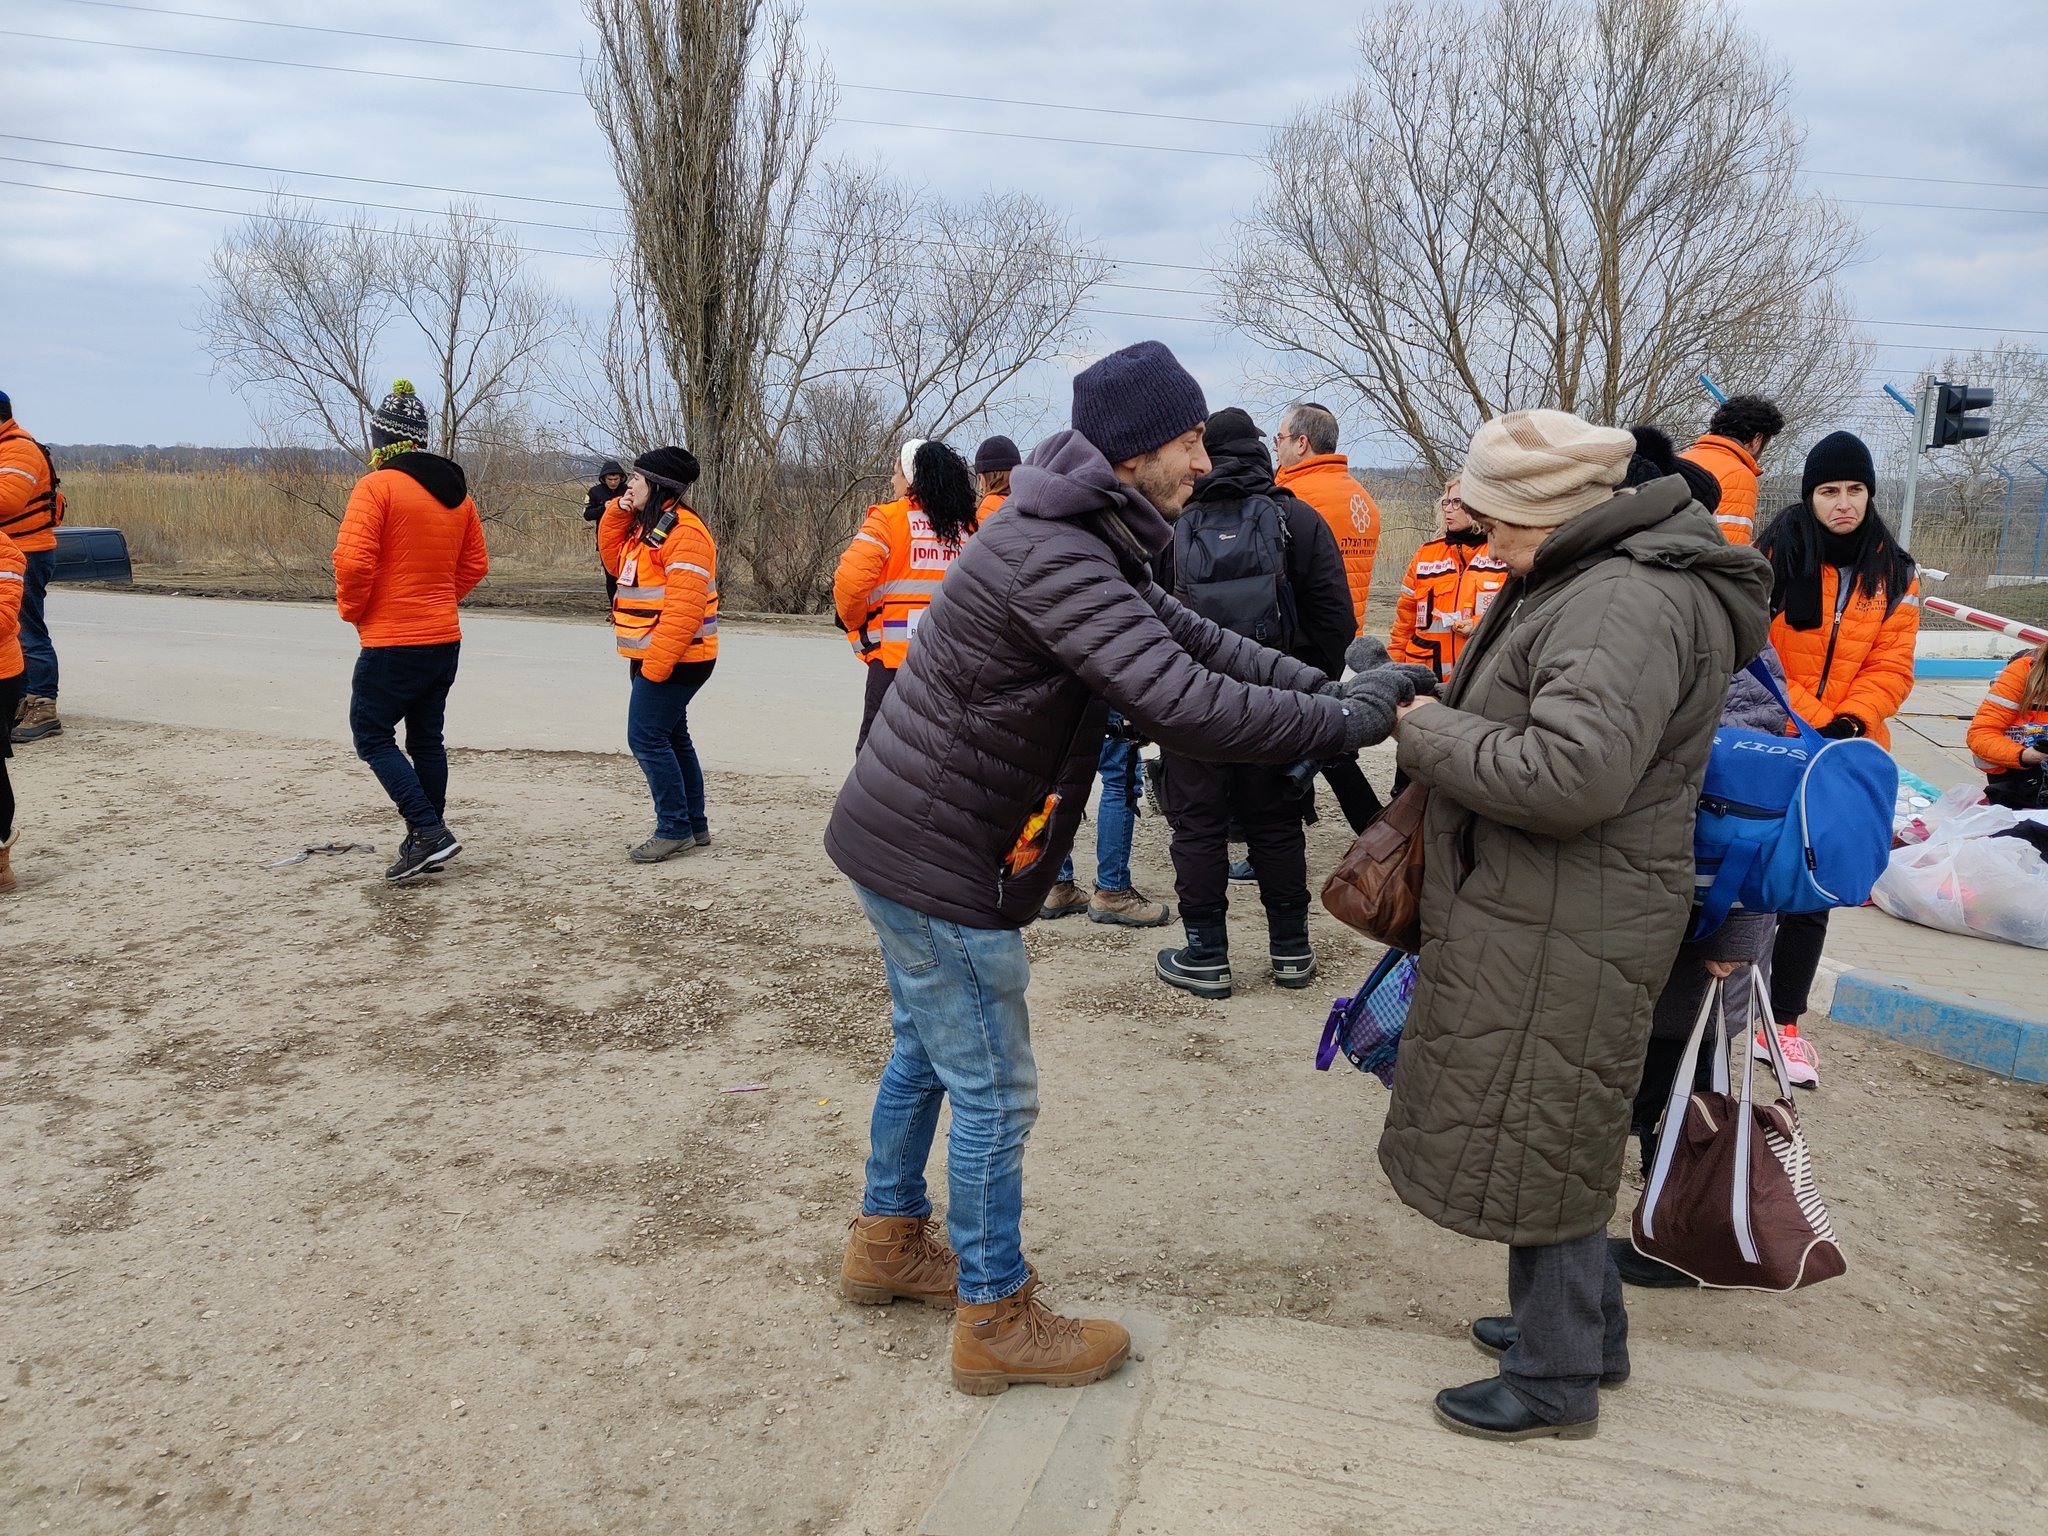 Médicos y voluntarios de Florida solidarios con refugiados ucranianos en Moldavia